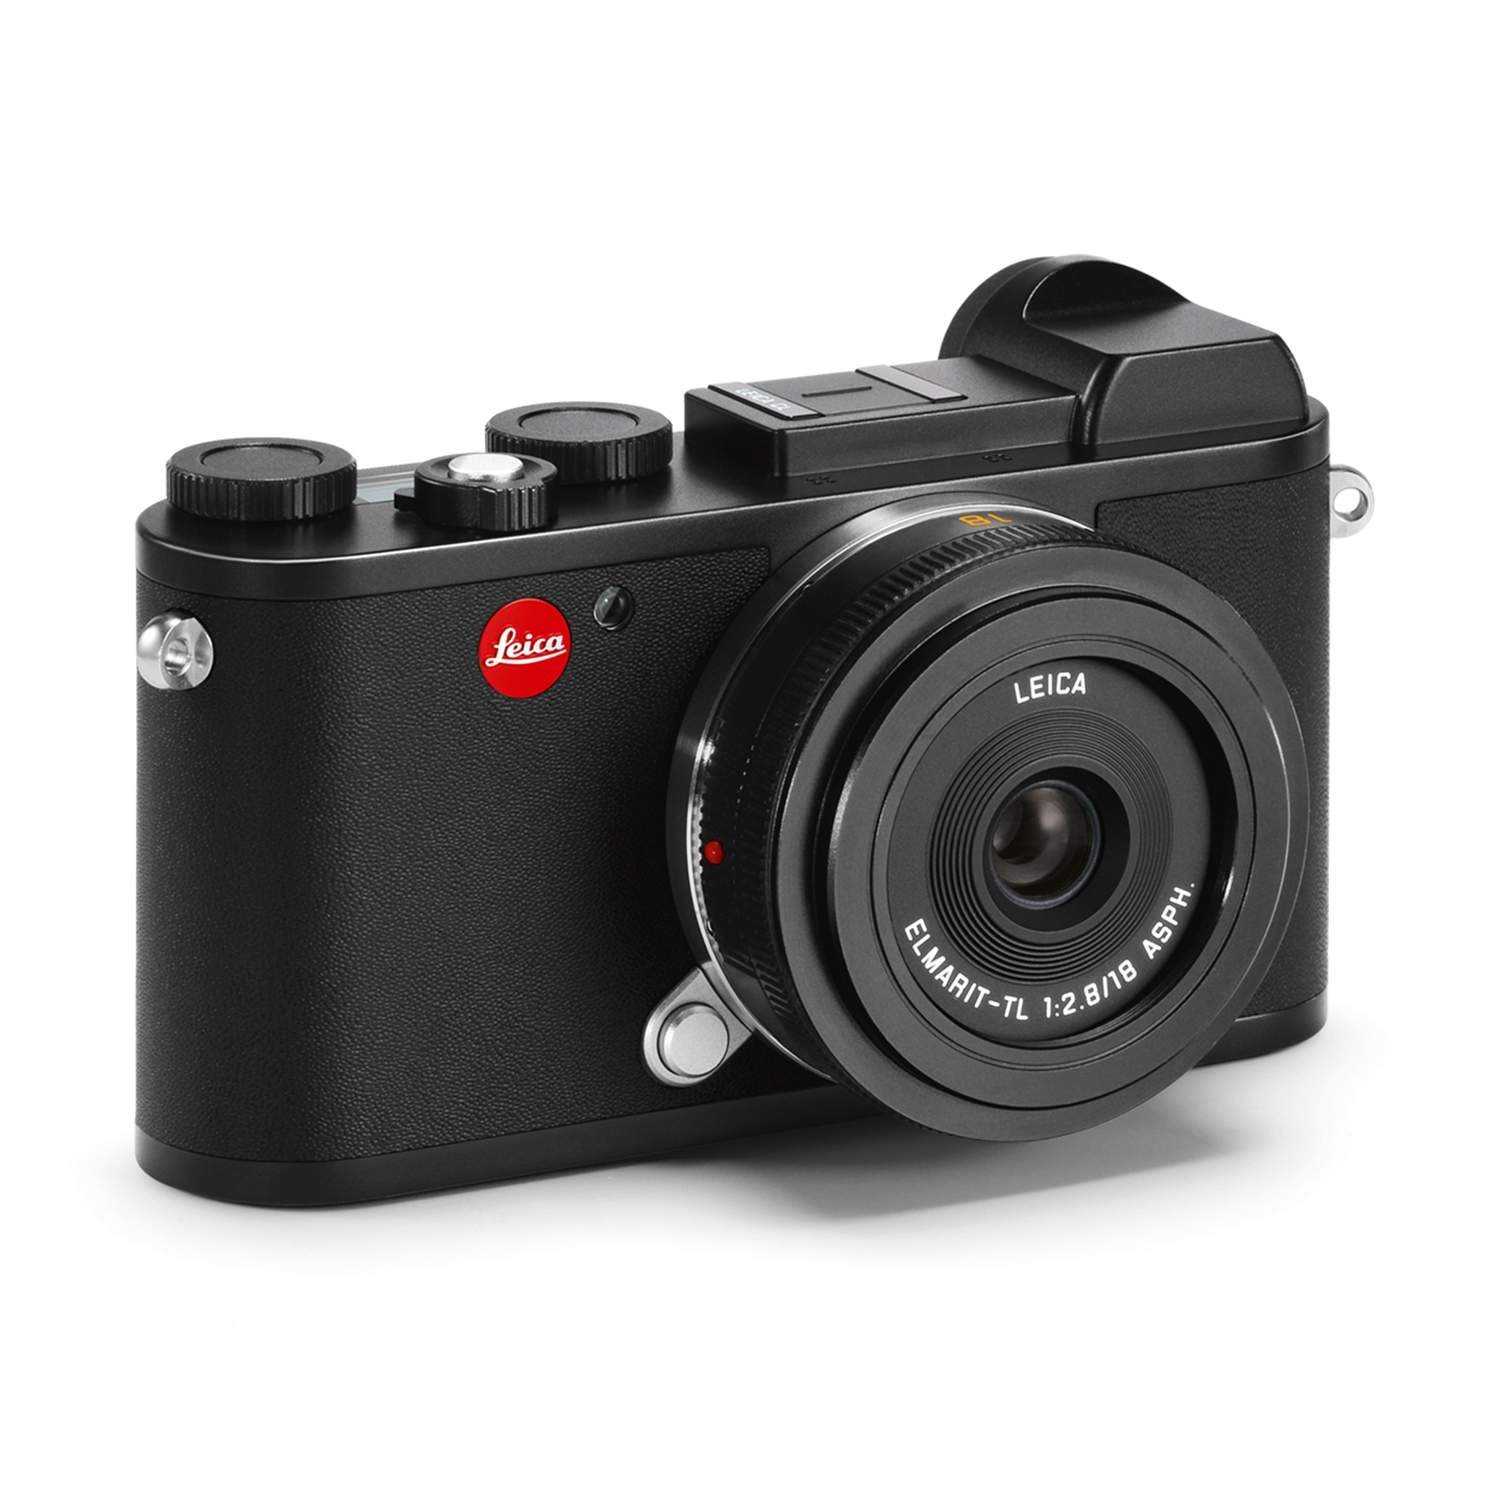 Цифровой фотоаппарат Leica C - подробные характеристики обзоры видео фото Цены в интернет-магазинах где можно купить цифровую фотоаппарат Leica C